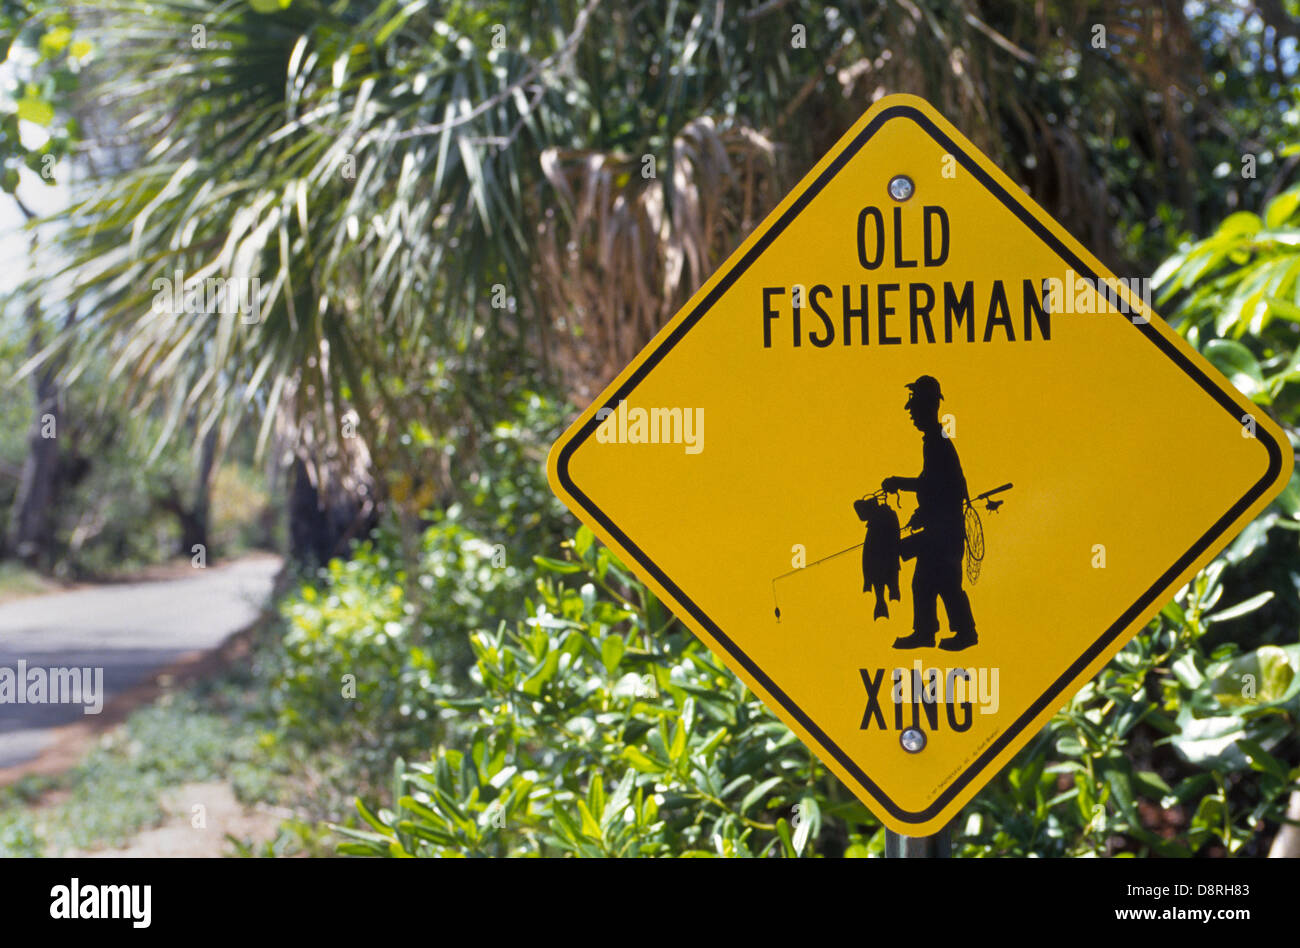 Un panneau de circulation avertit d'un franchissement routier pour les vieux gens qui aiment le poisson, qui est un passe-temps populaire pour les retraités dans l'état de soleil de la Floride, aux États-Unis. Banque D'Images